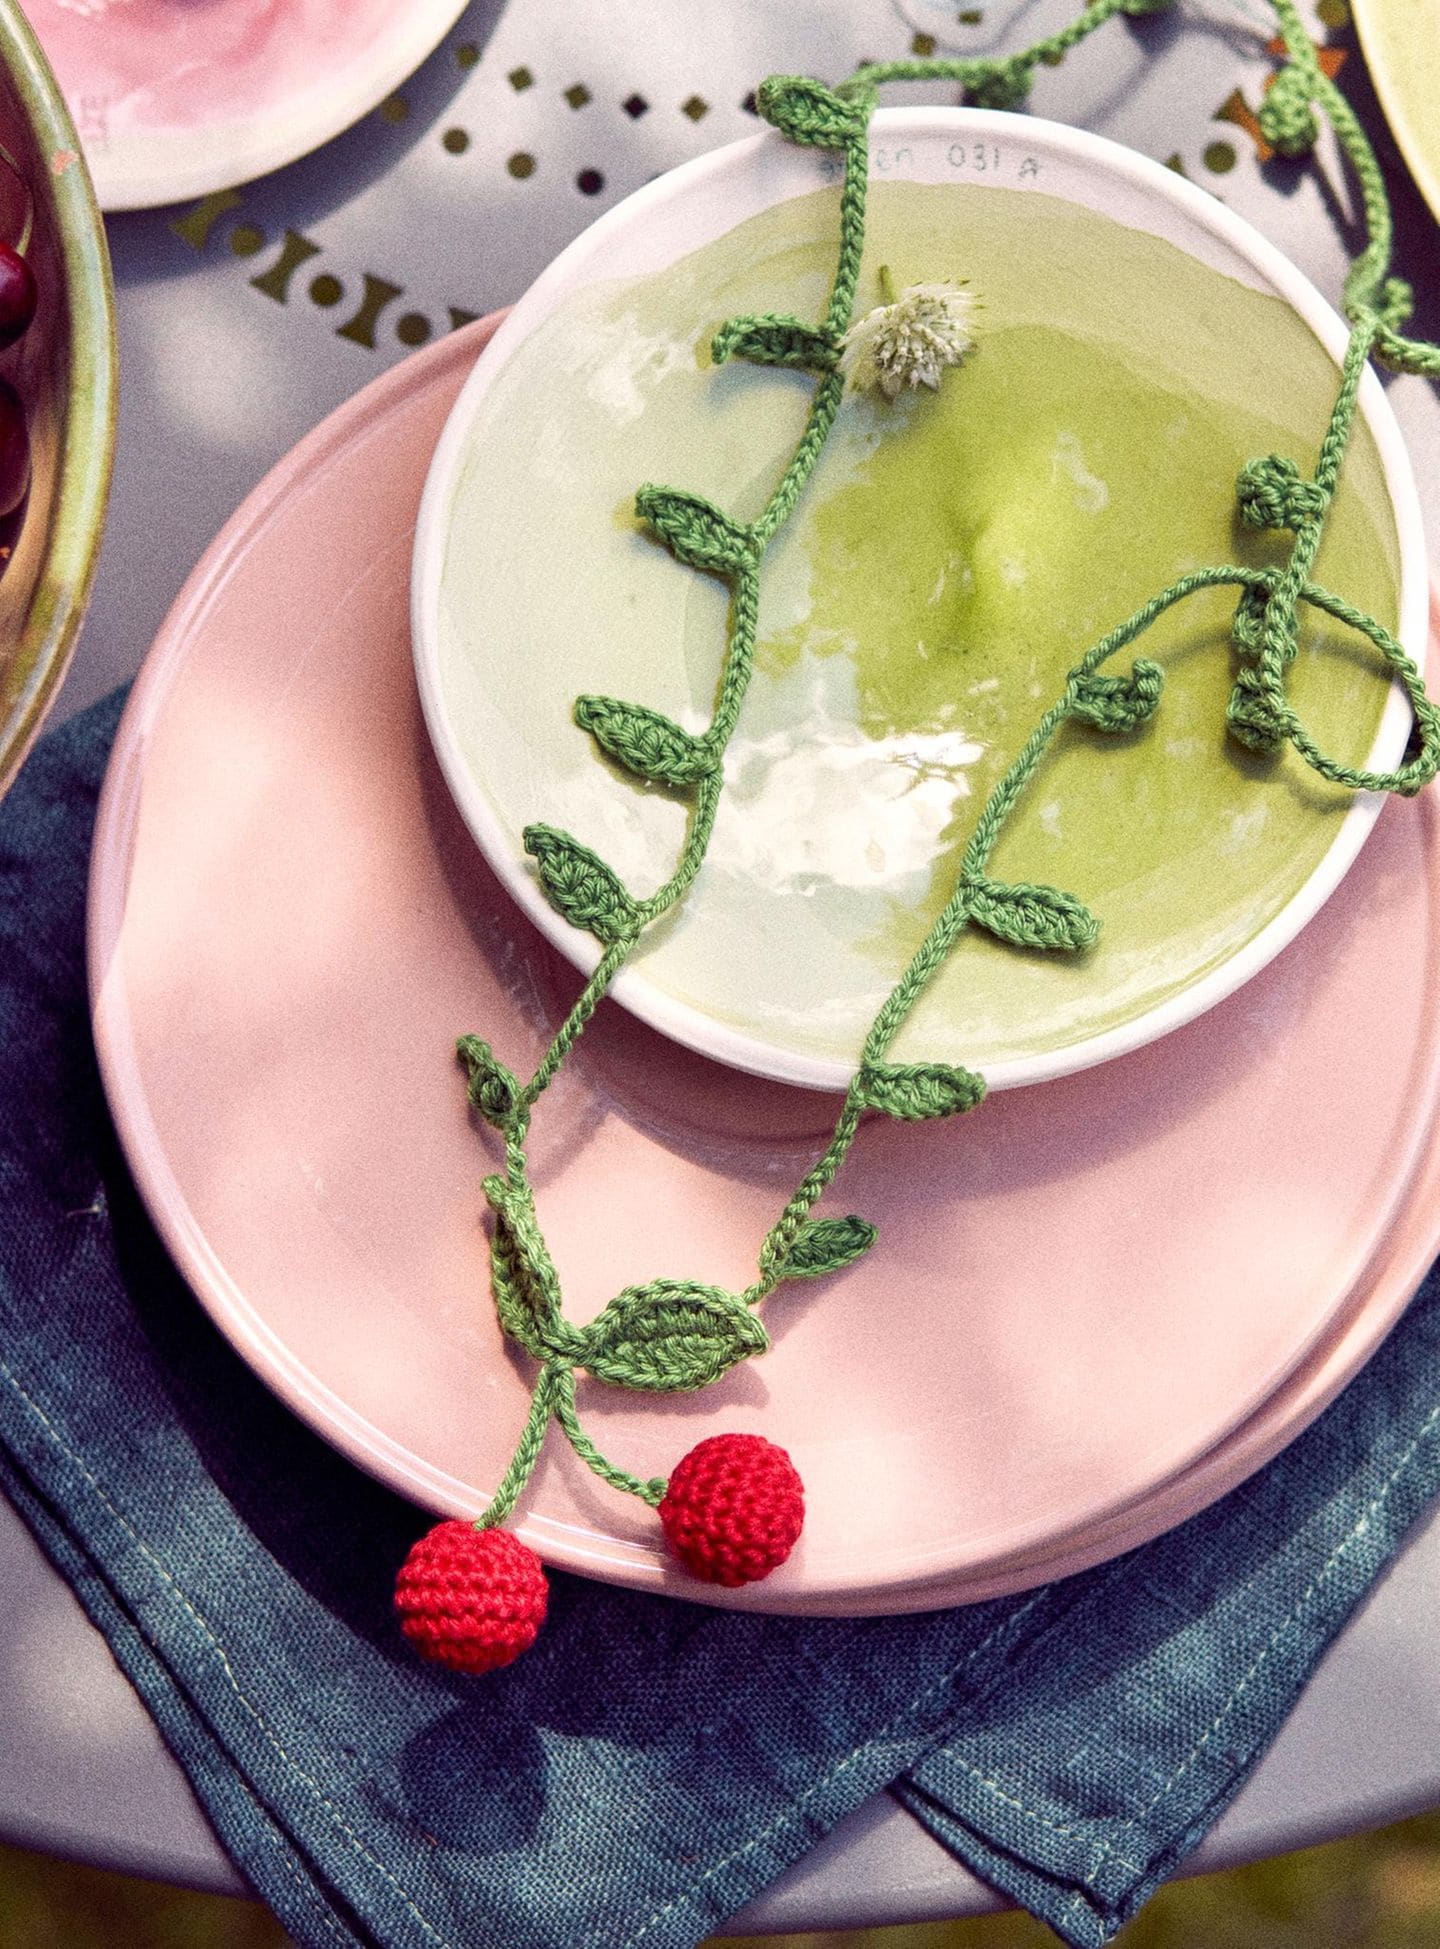 Eine gehäkelte Kette mit Kirschmotiven liegt auf pinken und grünen Tellern, darunter eine blaue Serviette